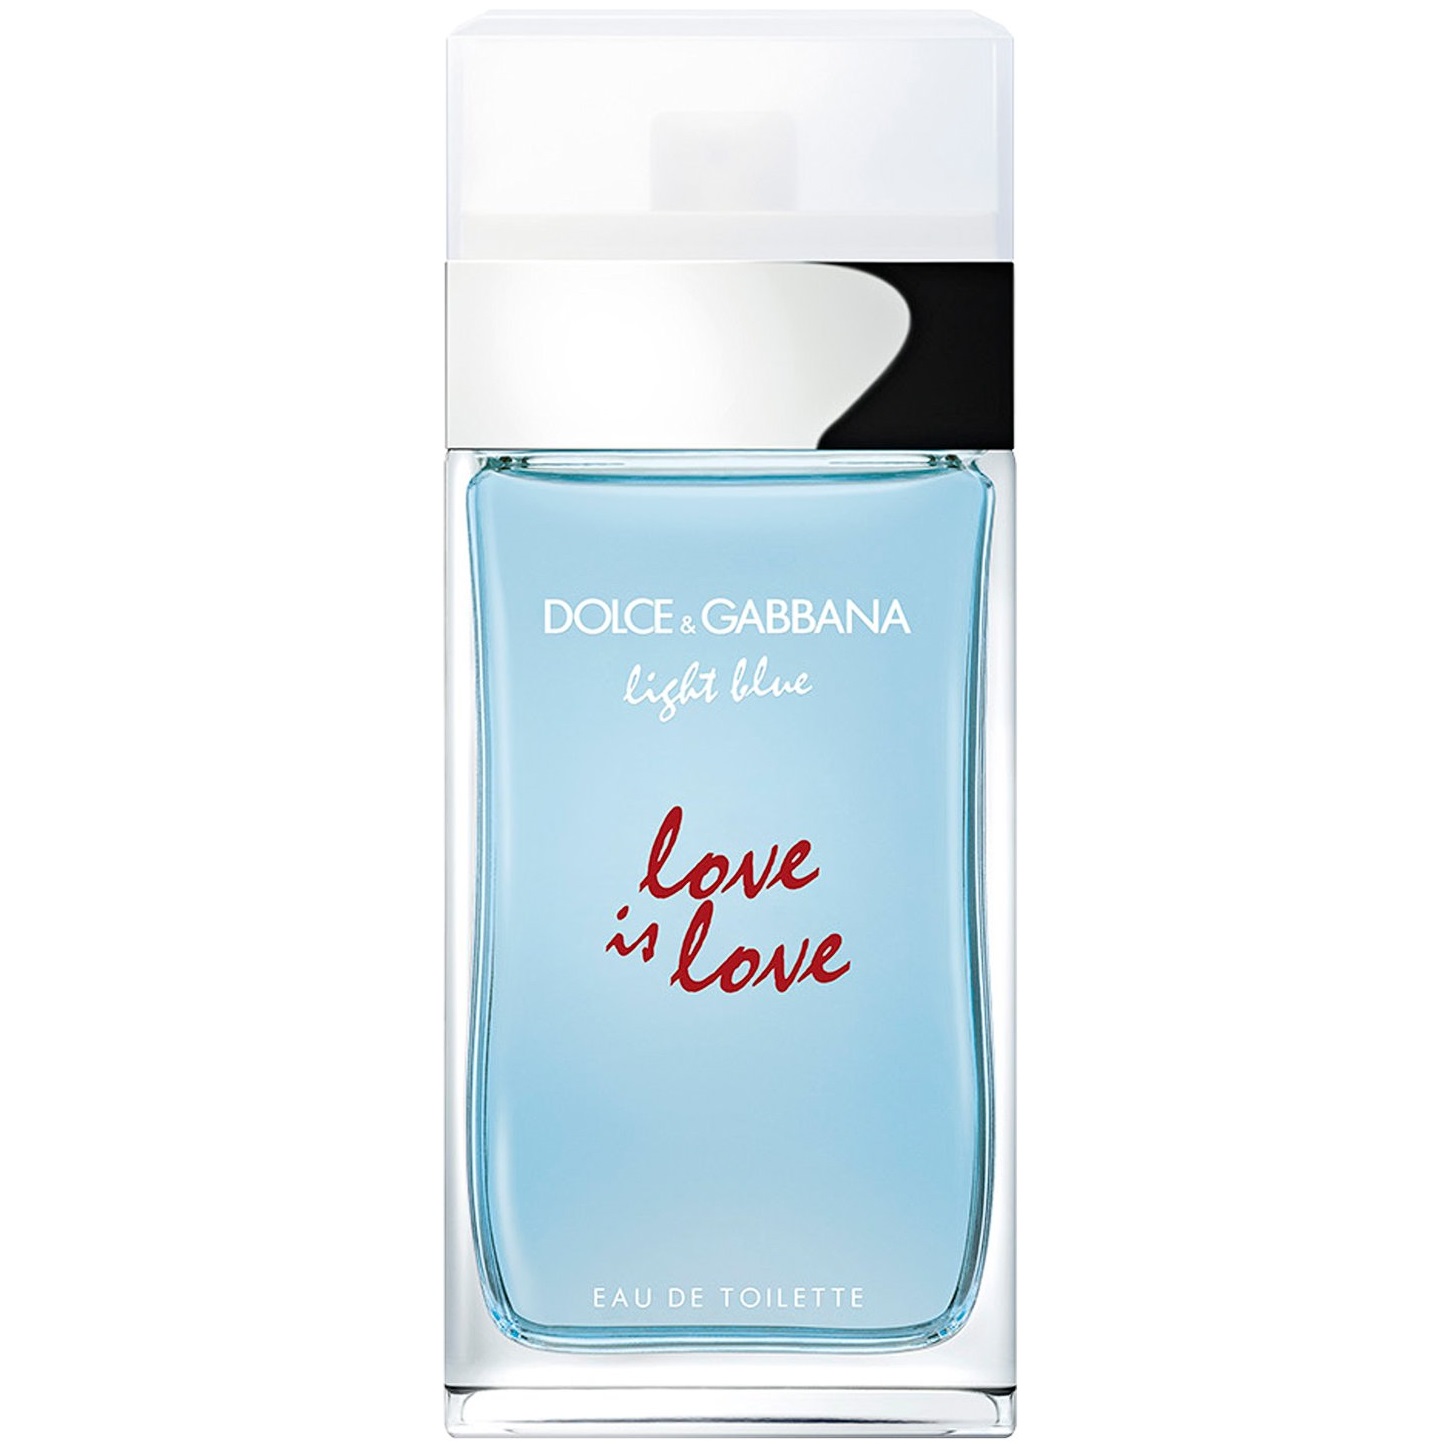 Туалетного лов. Дольче габана Лайт Блю. Духи Дольче Габбана Лайт Блю. Dolce & Gabbana Light Blue pour femme EDT, 100 ml. Dolce Gabbana Light Blue Love is Love.